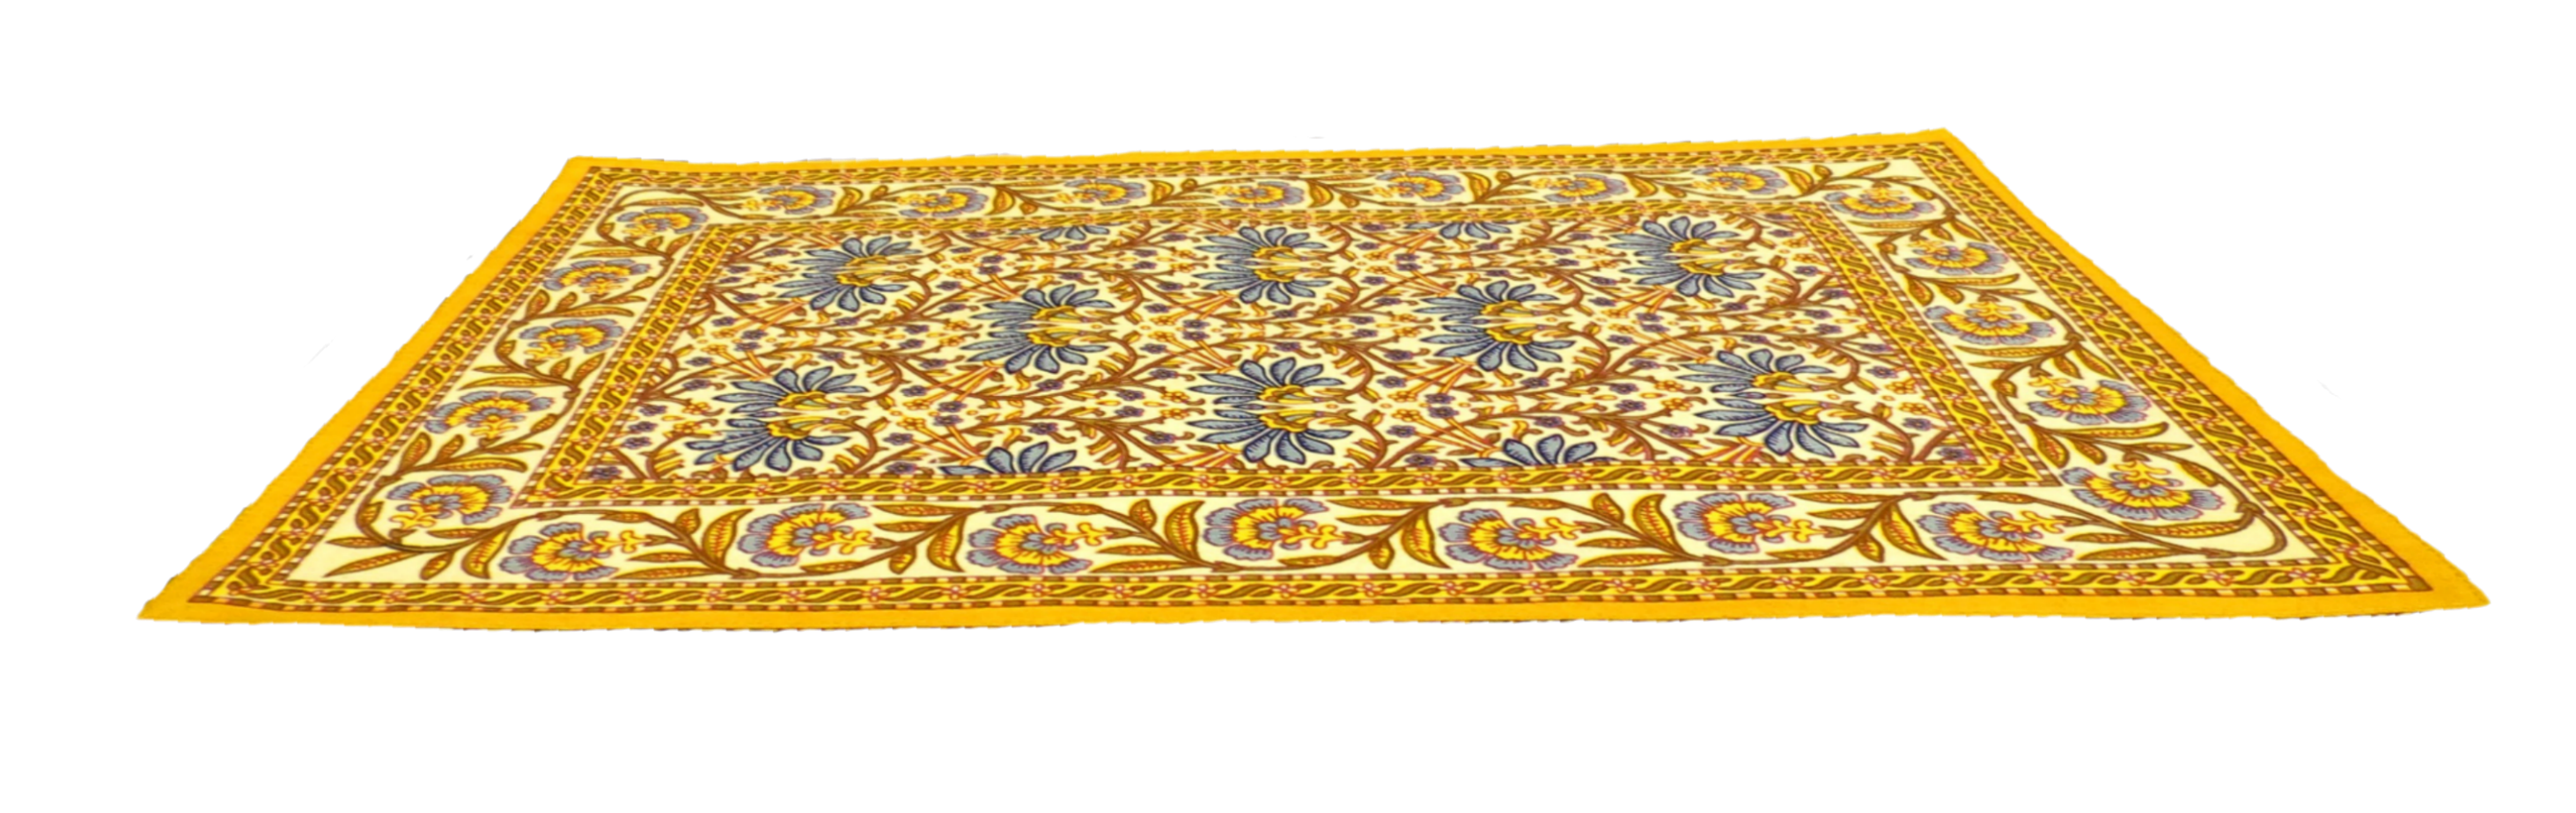 Archivo transparente de la alfombra